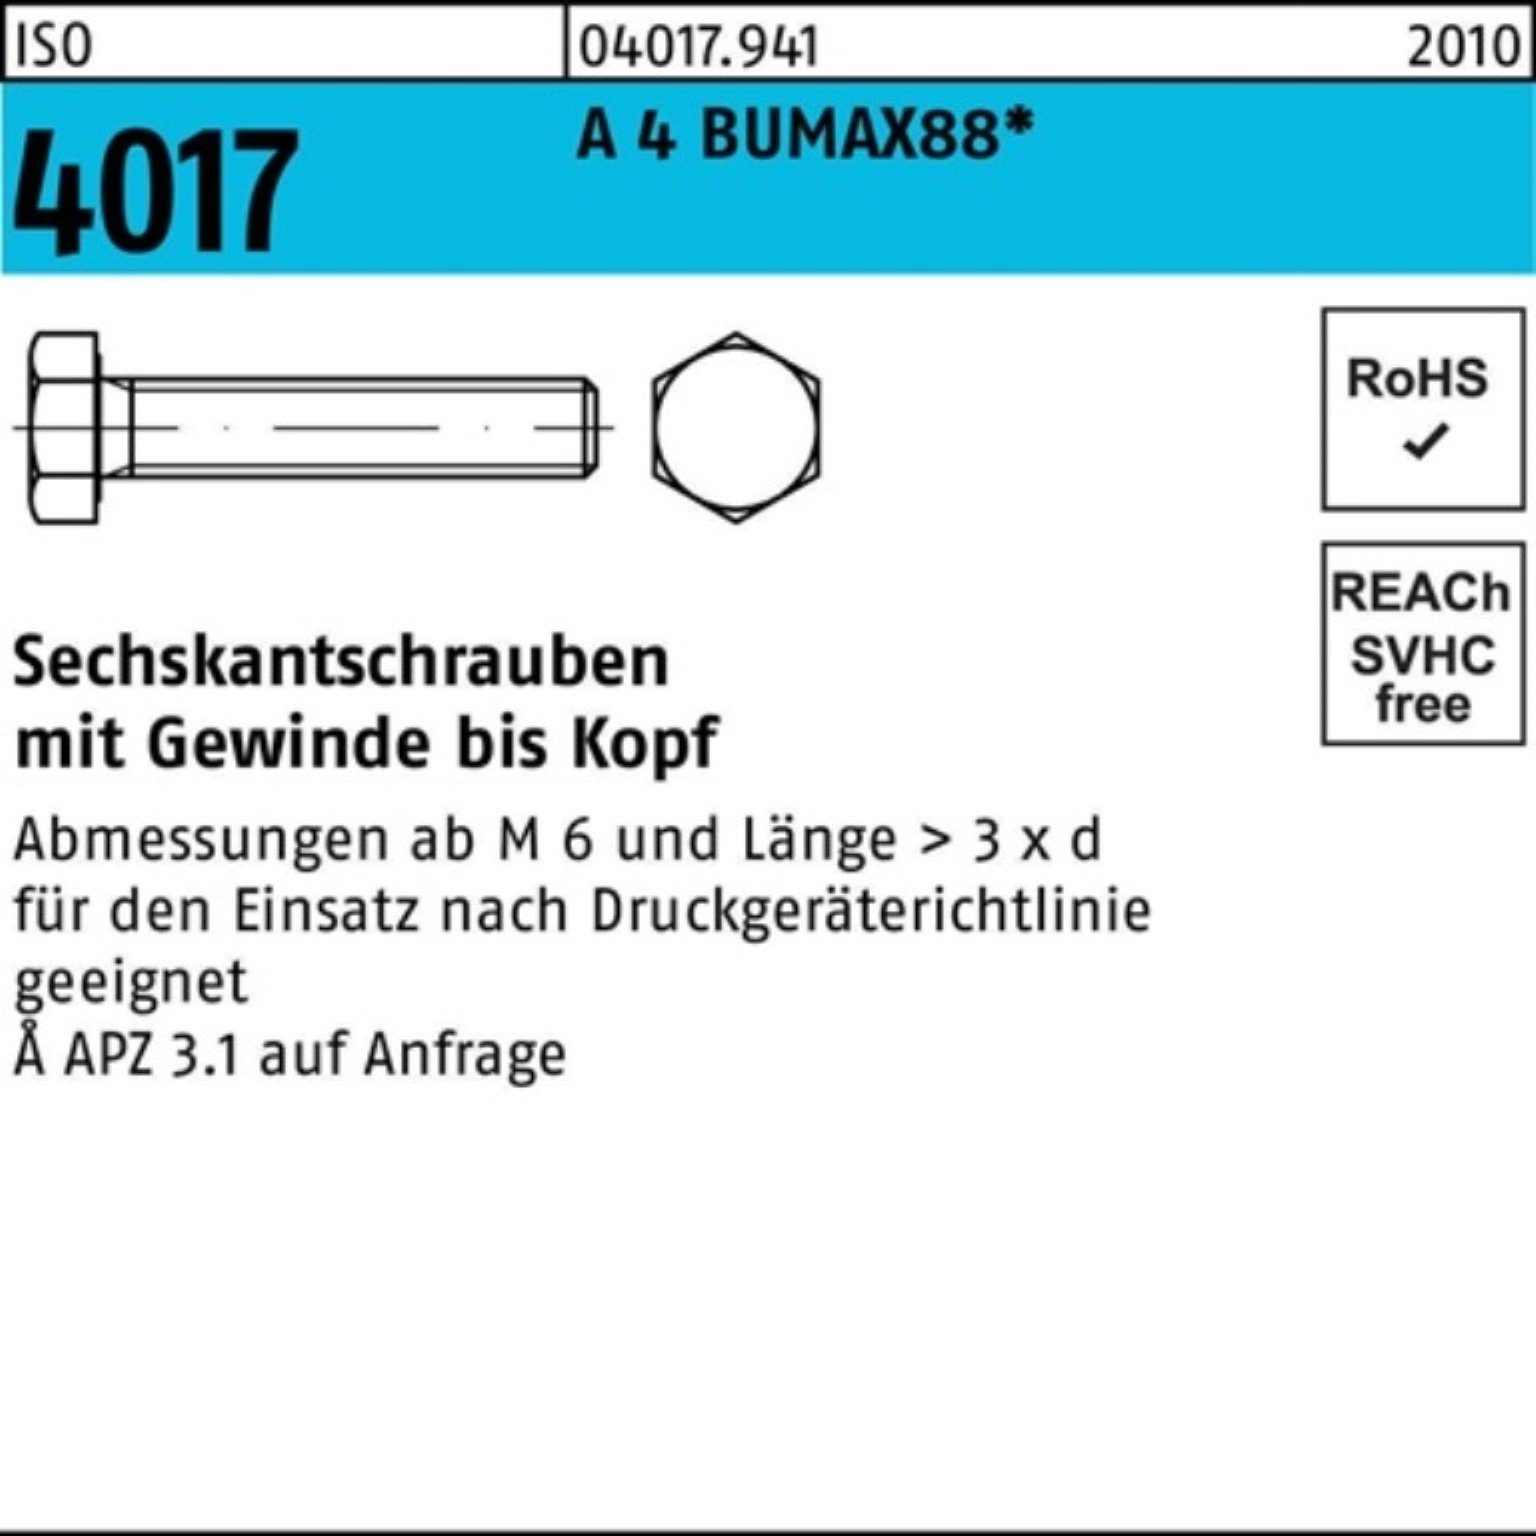 Bufab Sechskantschraube 100er Pack VG Sechskantschraube 35 BUMAX88 Stück ISO 25 4017 M12x 4 A